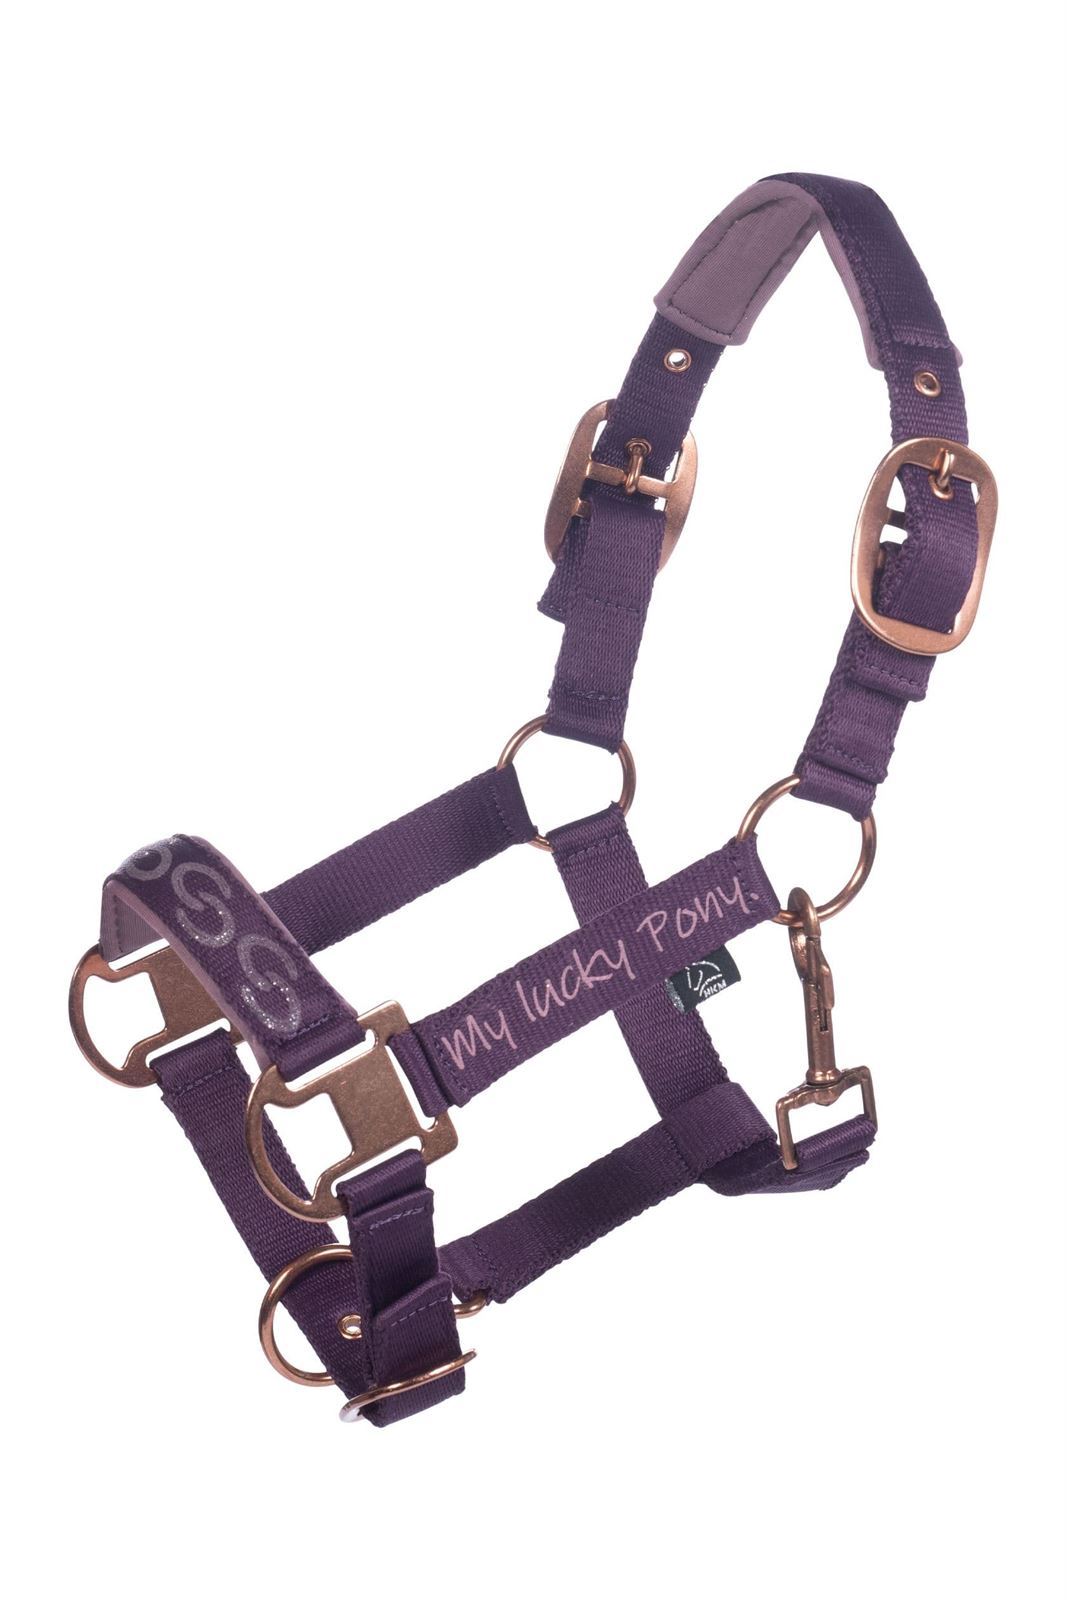 Cabezada cuadra con ramal HKM Sports Equipment Alva color lila oscuro TALLA PONY - Imagen 1